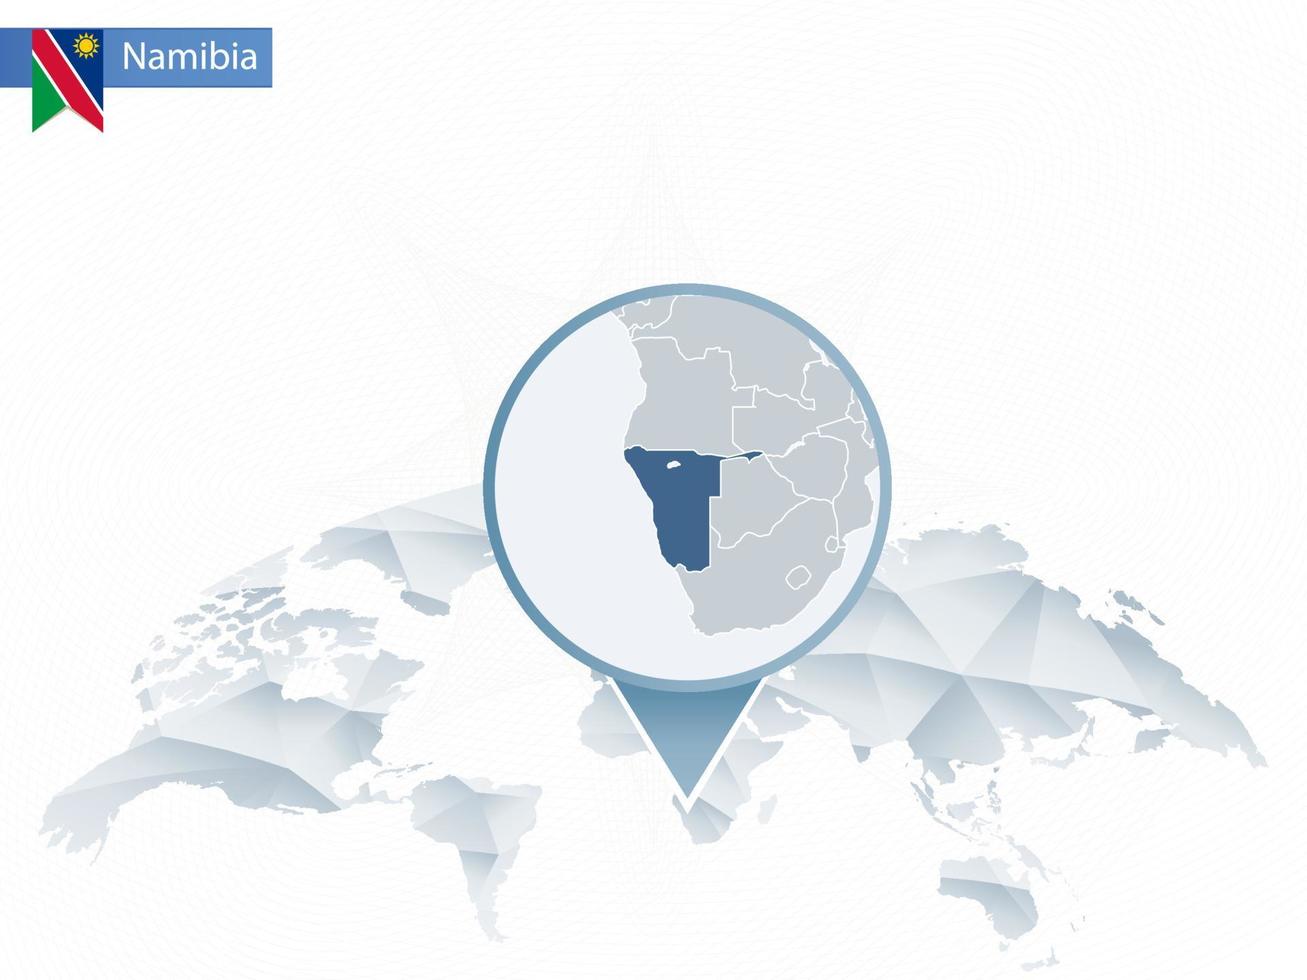 carte du monde arrondie abstraite avec carte détaillée de la namibie épinglée. vecteur